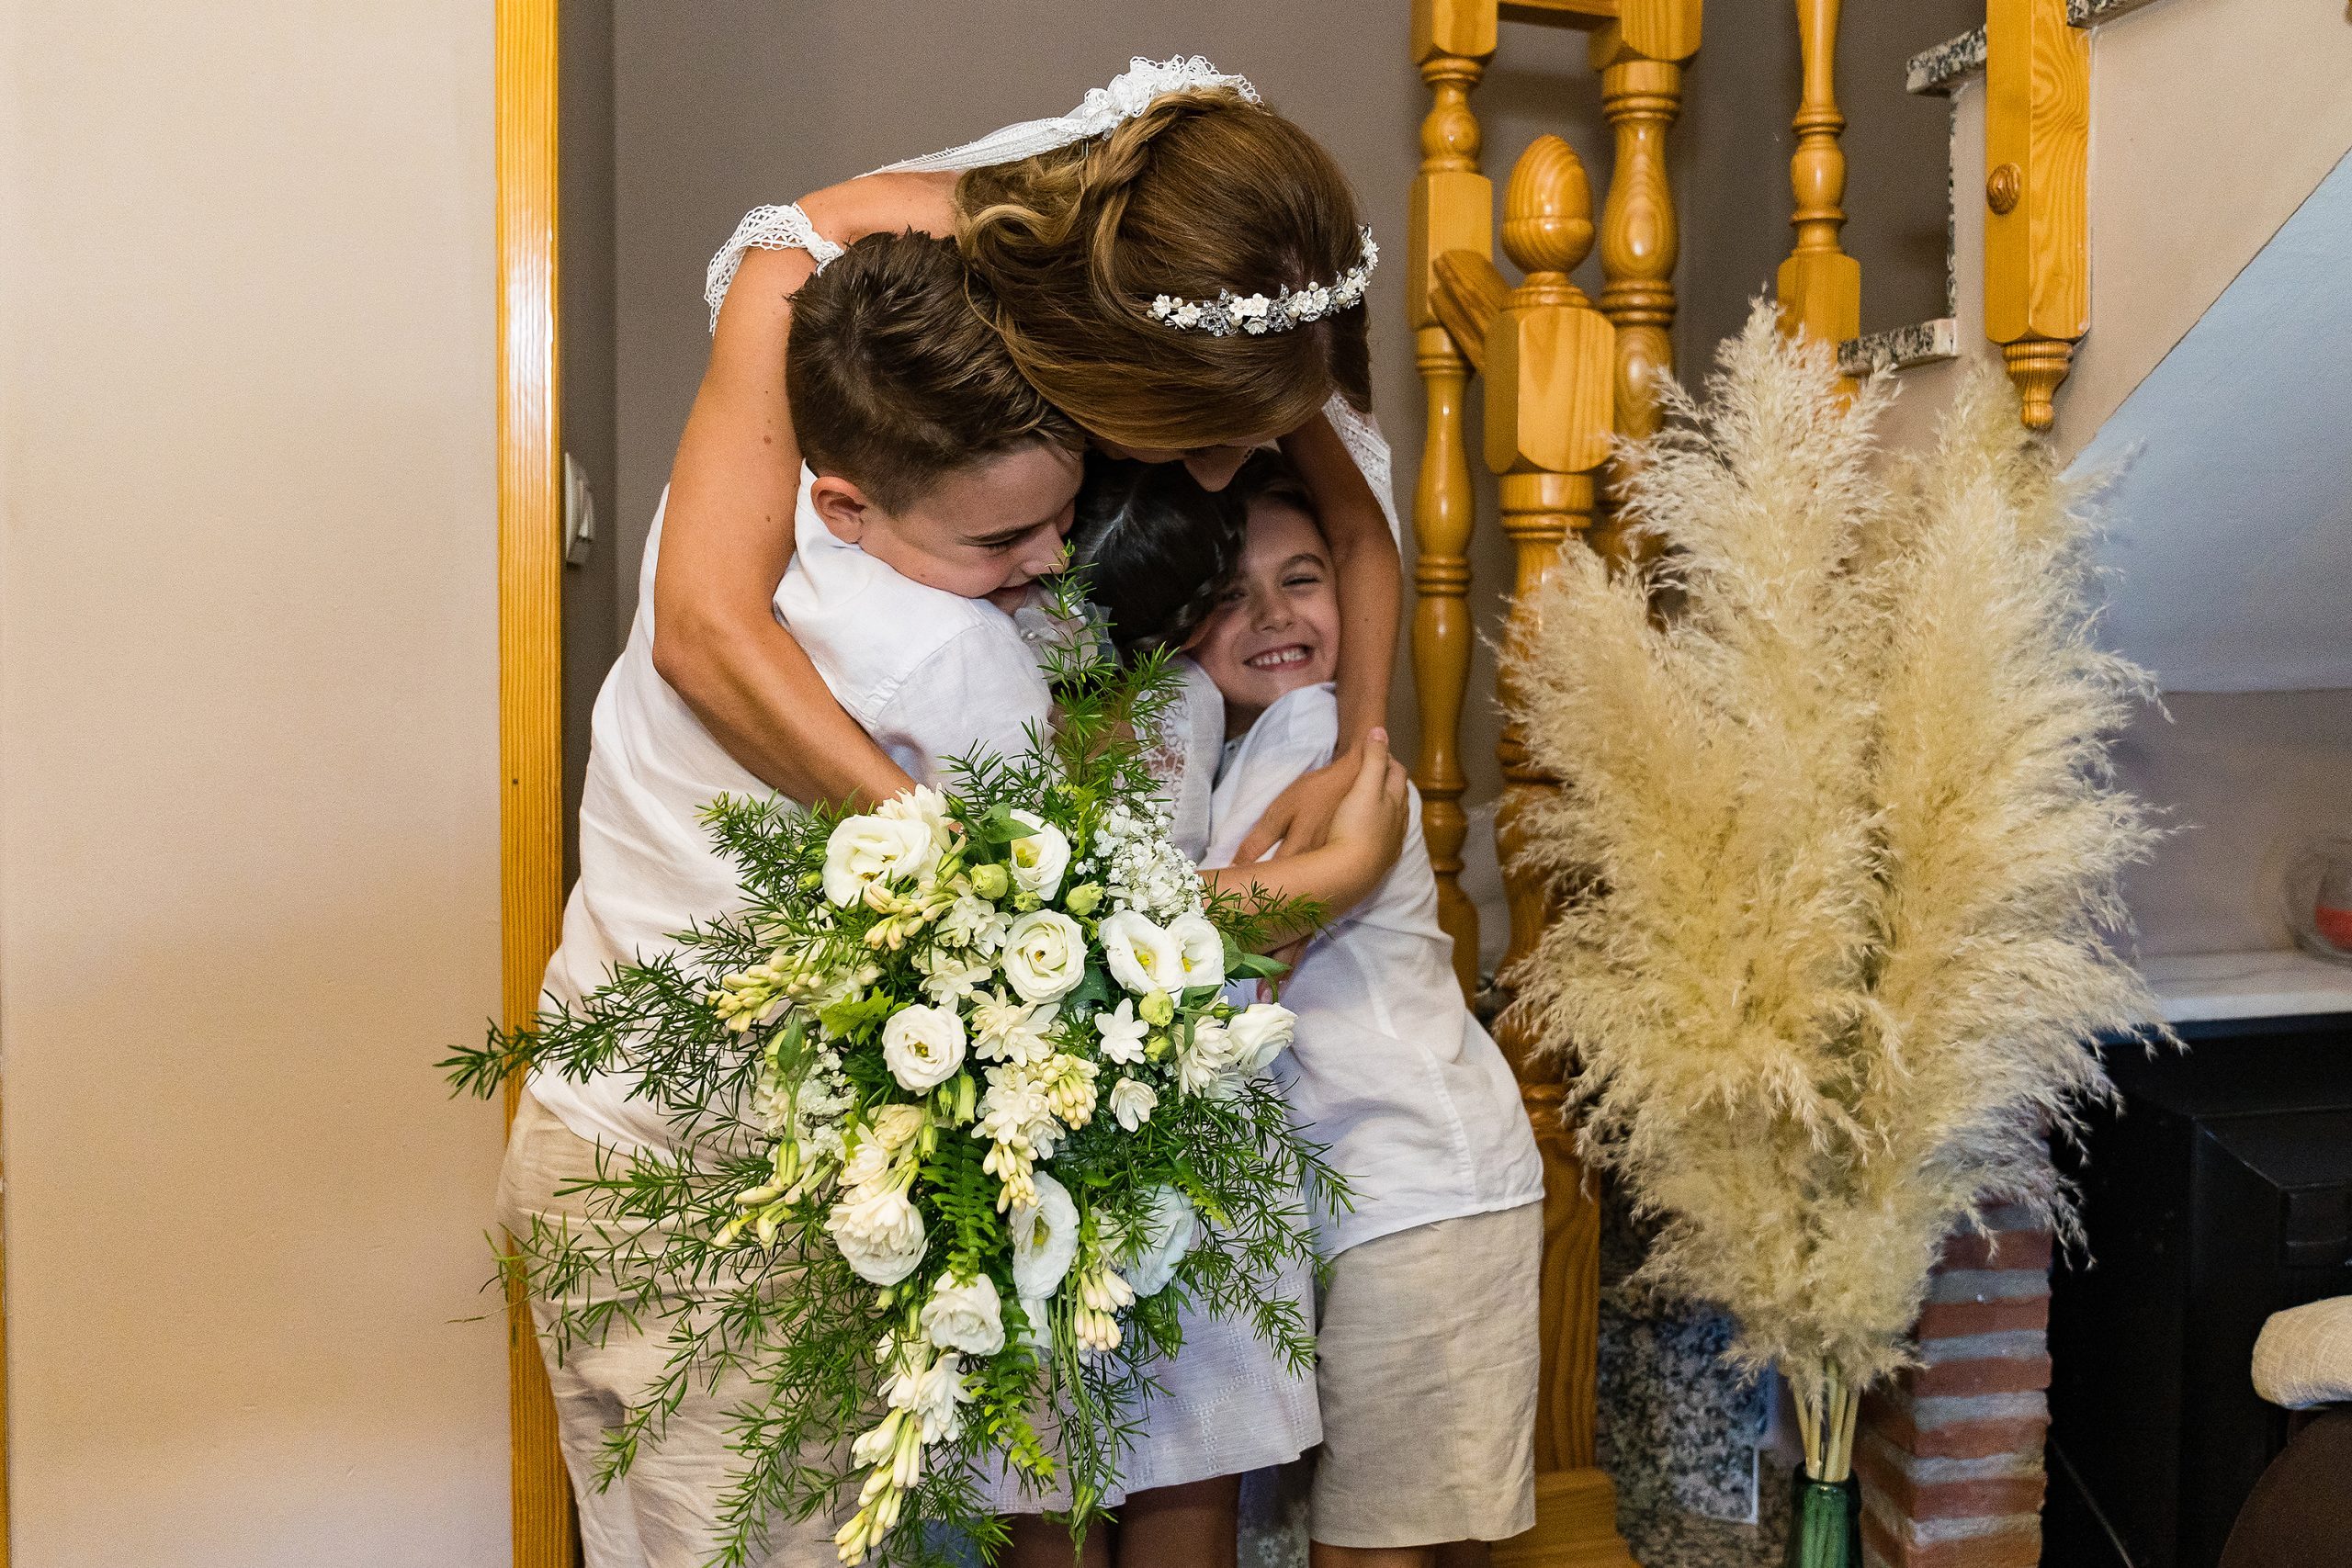 La novia abrazando a tres niños pequeños después de bajar por las escaleras